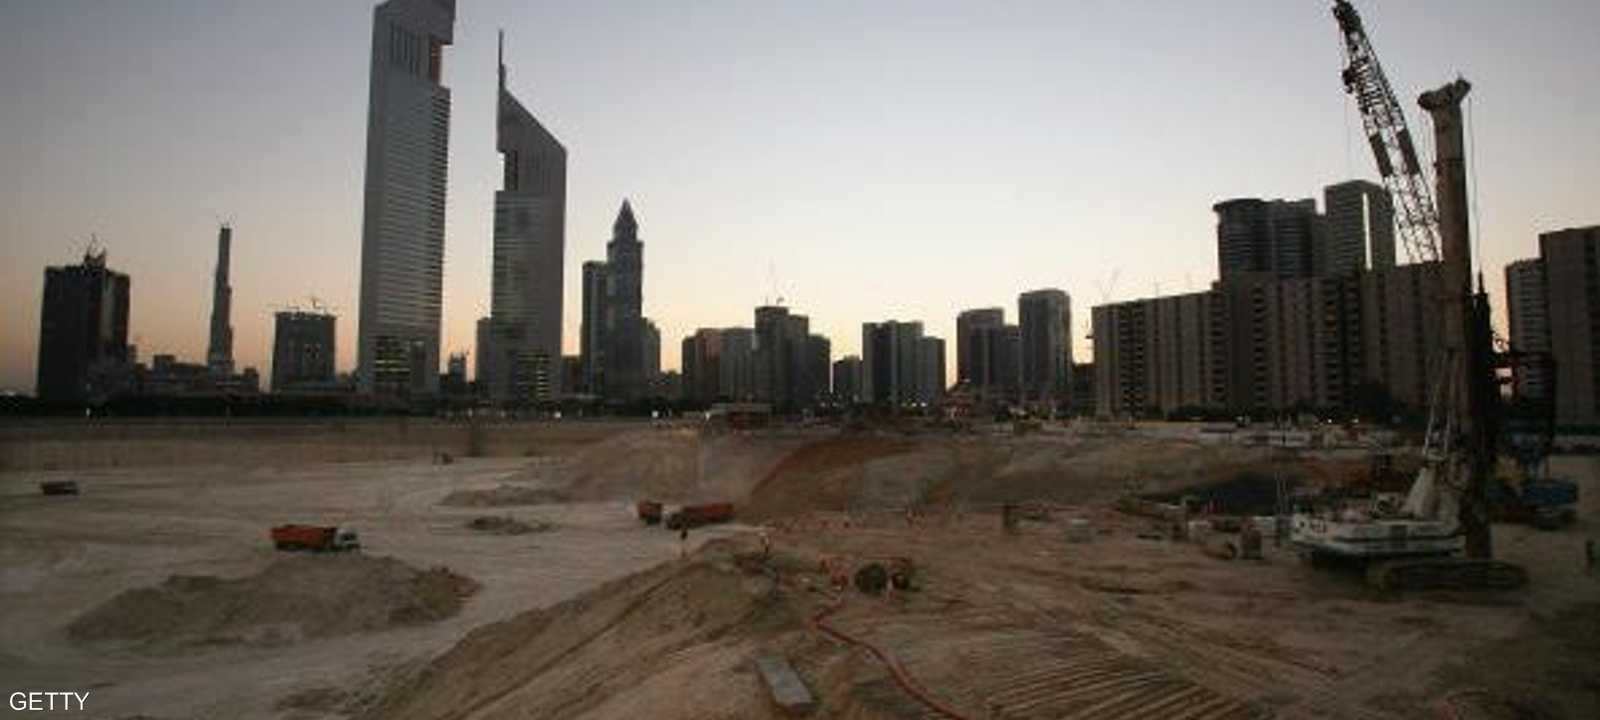 دريك آند سكل تنفذ مشاريعا عدة في الإمارات.